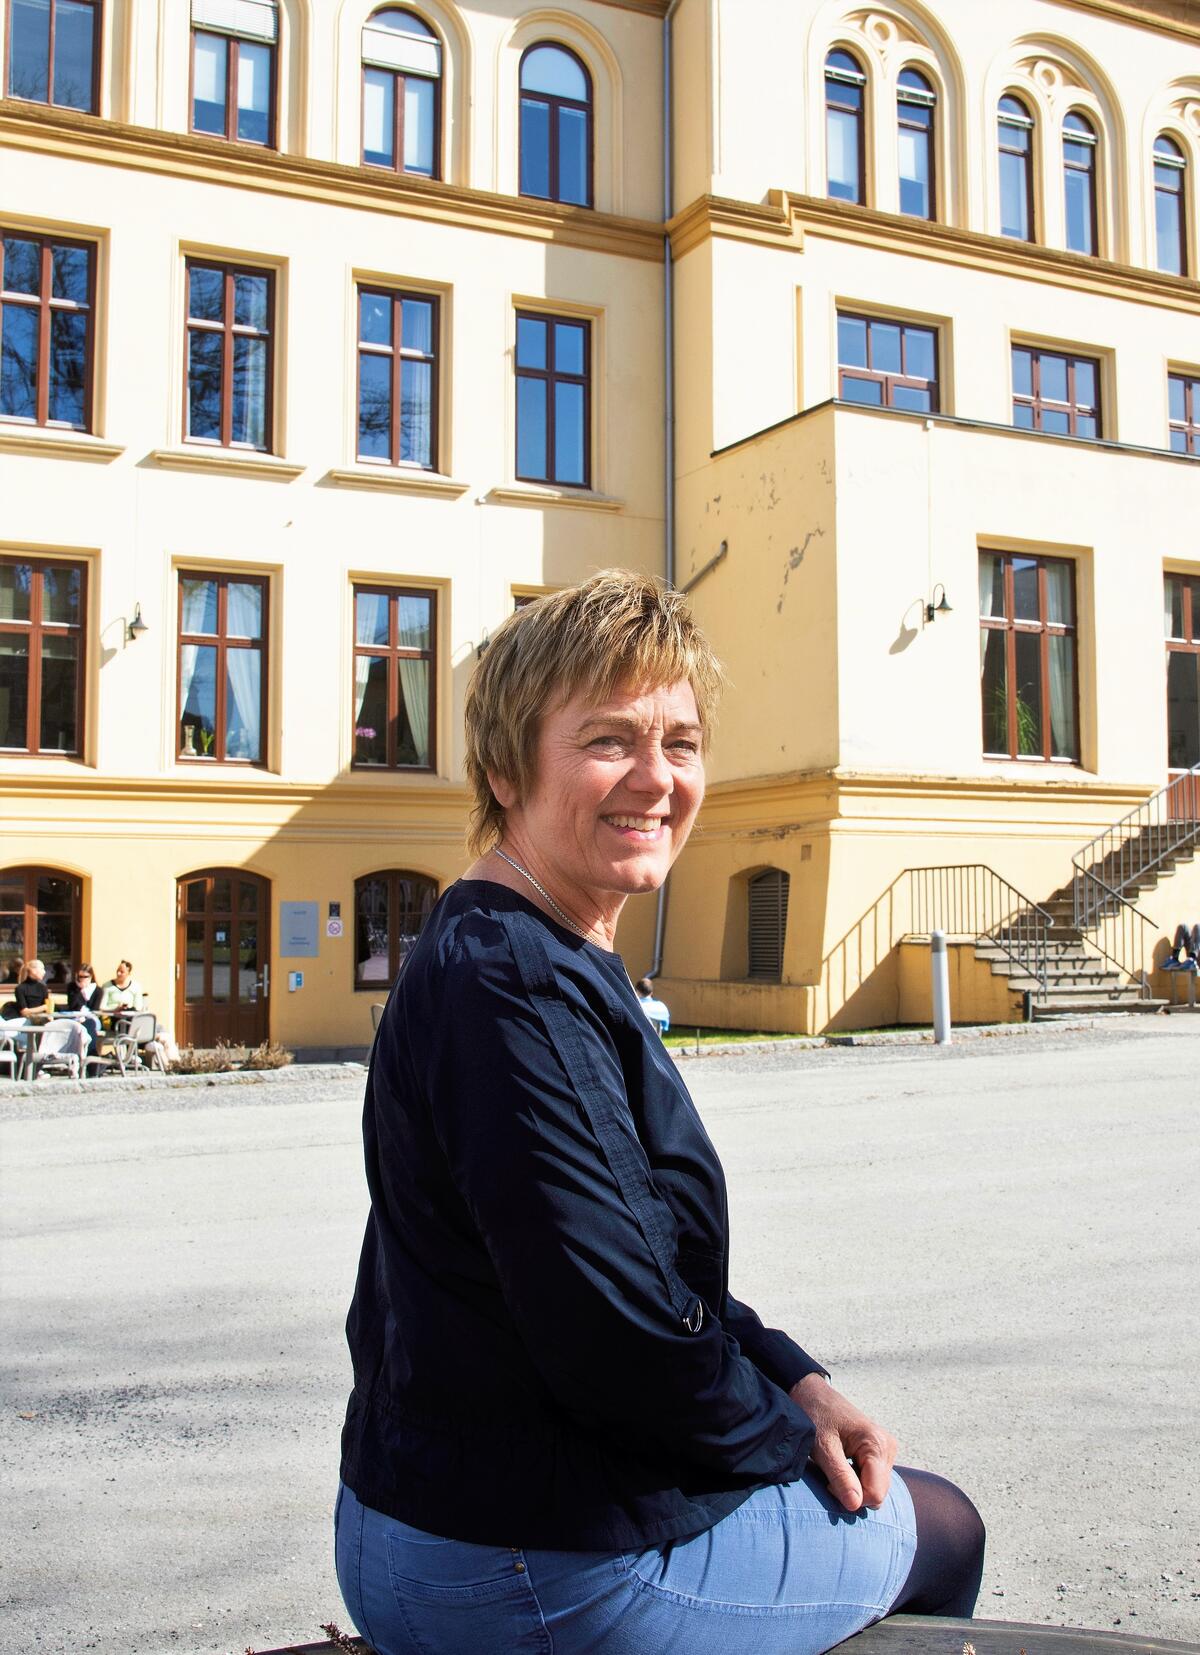 SER MULIGHETENE. HLF Rehabiliterings daglige leder Inge Bossen Thorsen har alltid blikket rettet framover mot nye mål.